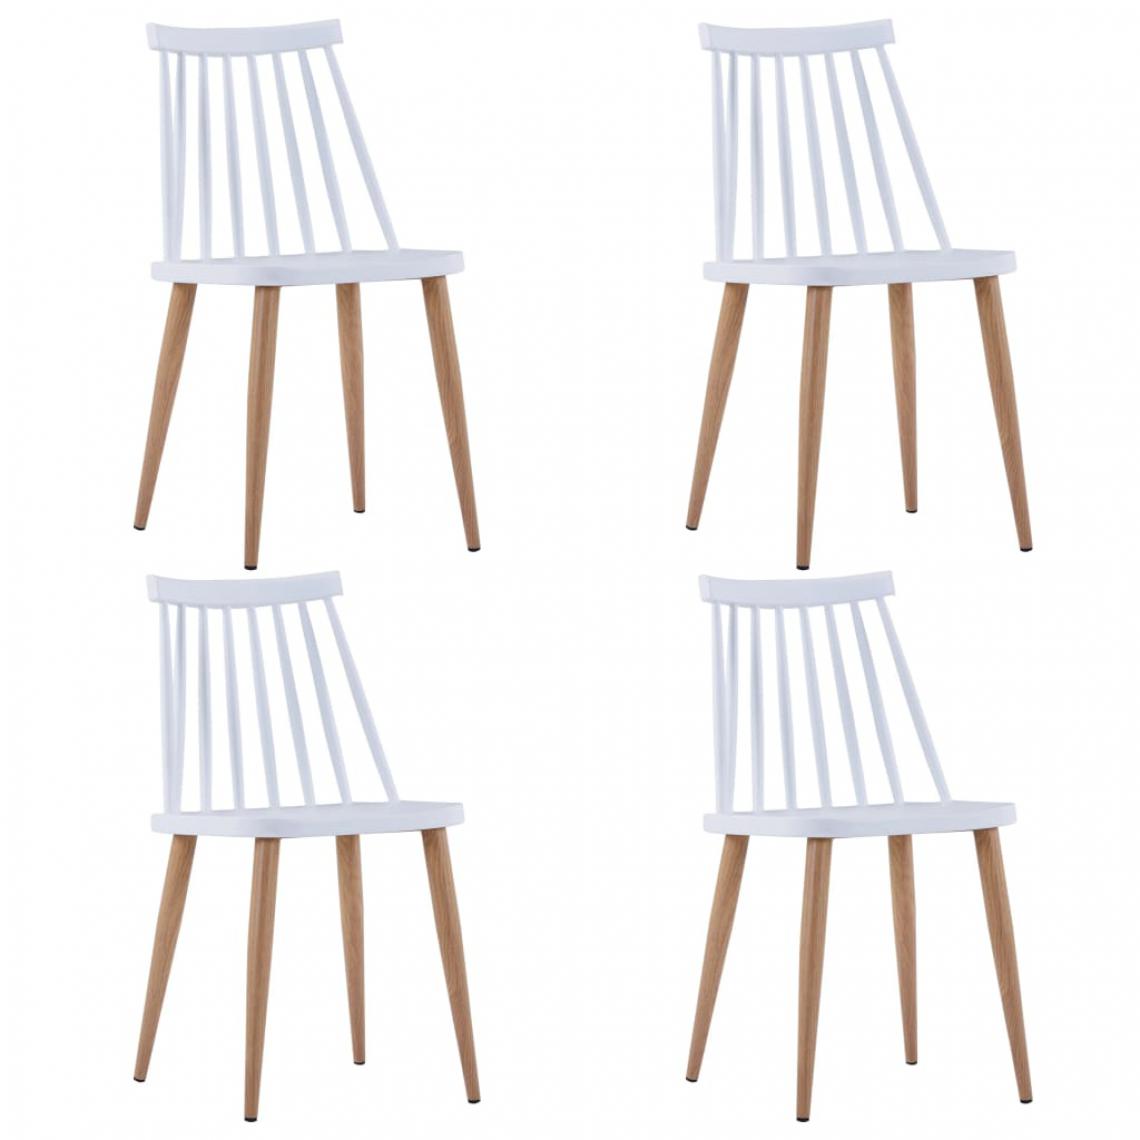 Chunhelife - Chunhelife 4 pcs Chaises de salle à manger Blanc Plastique - Chaises